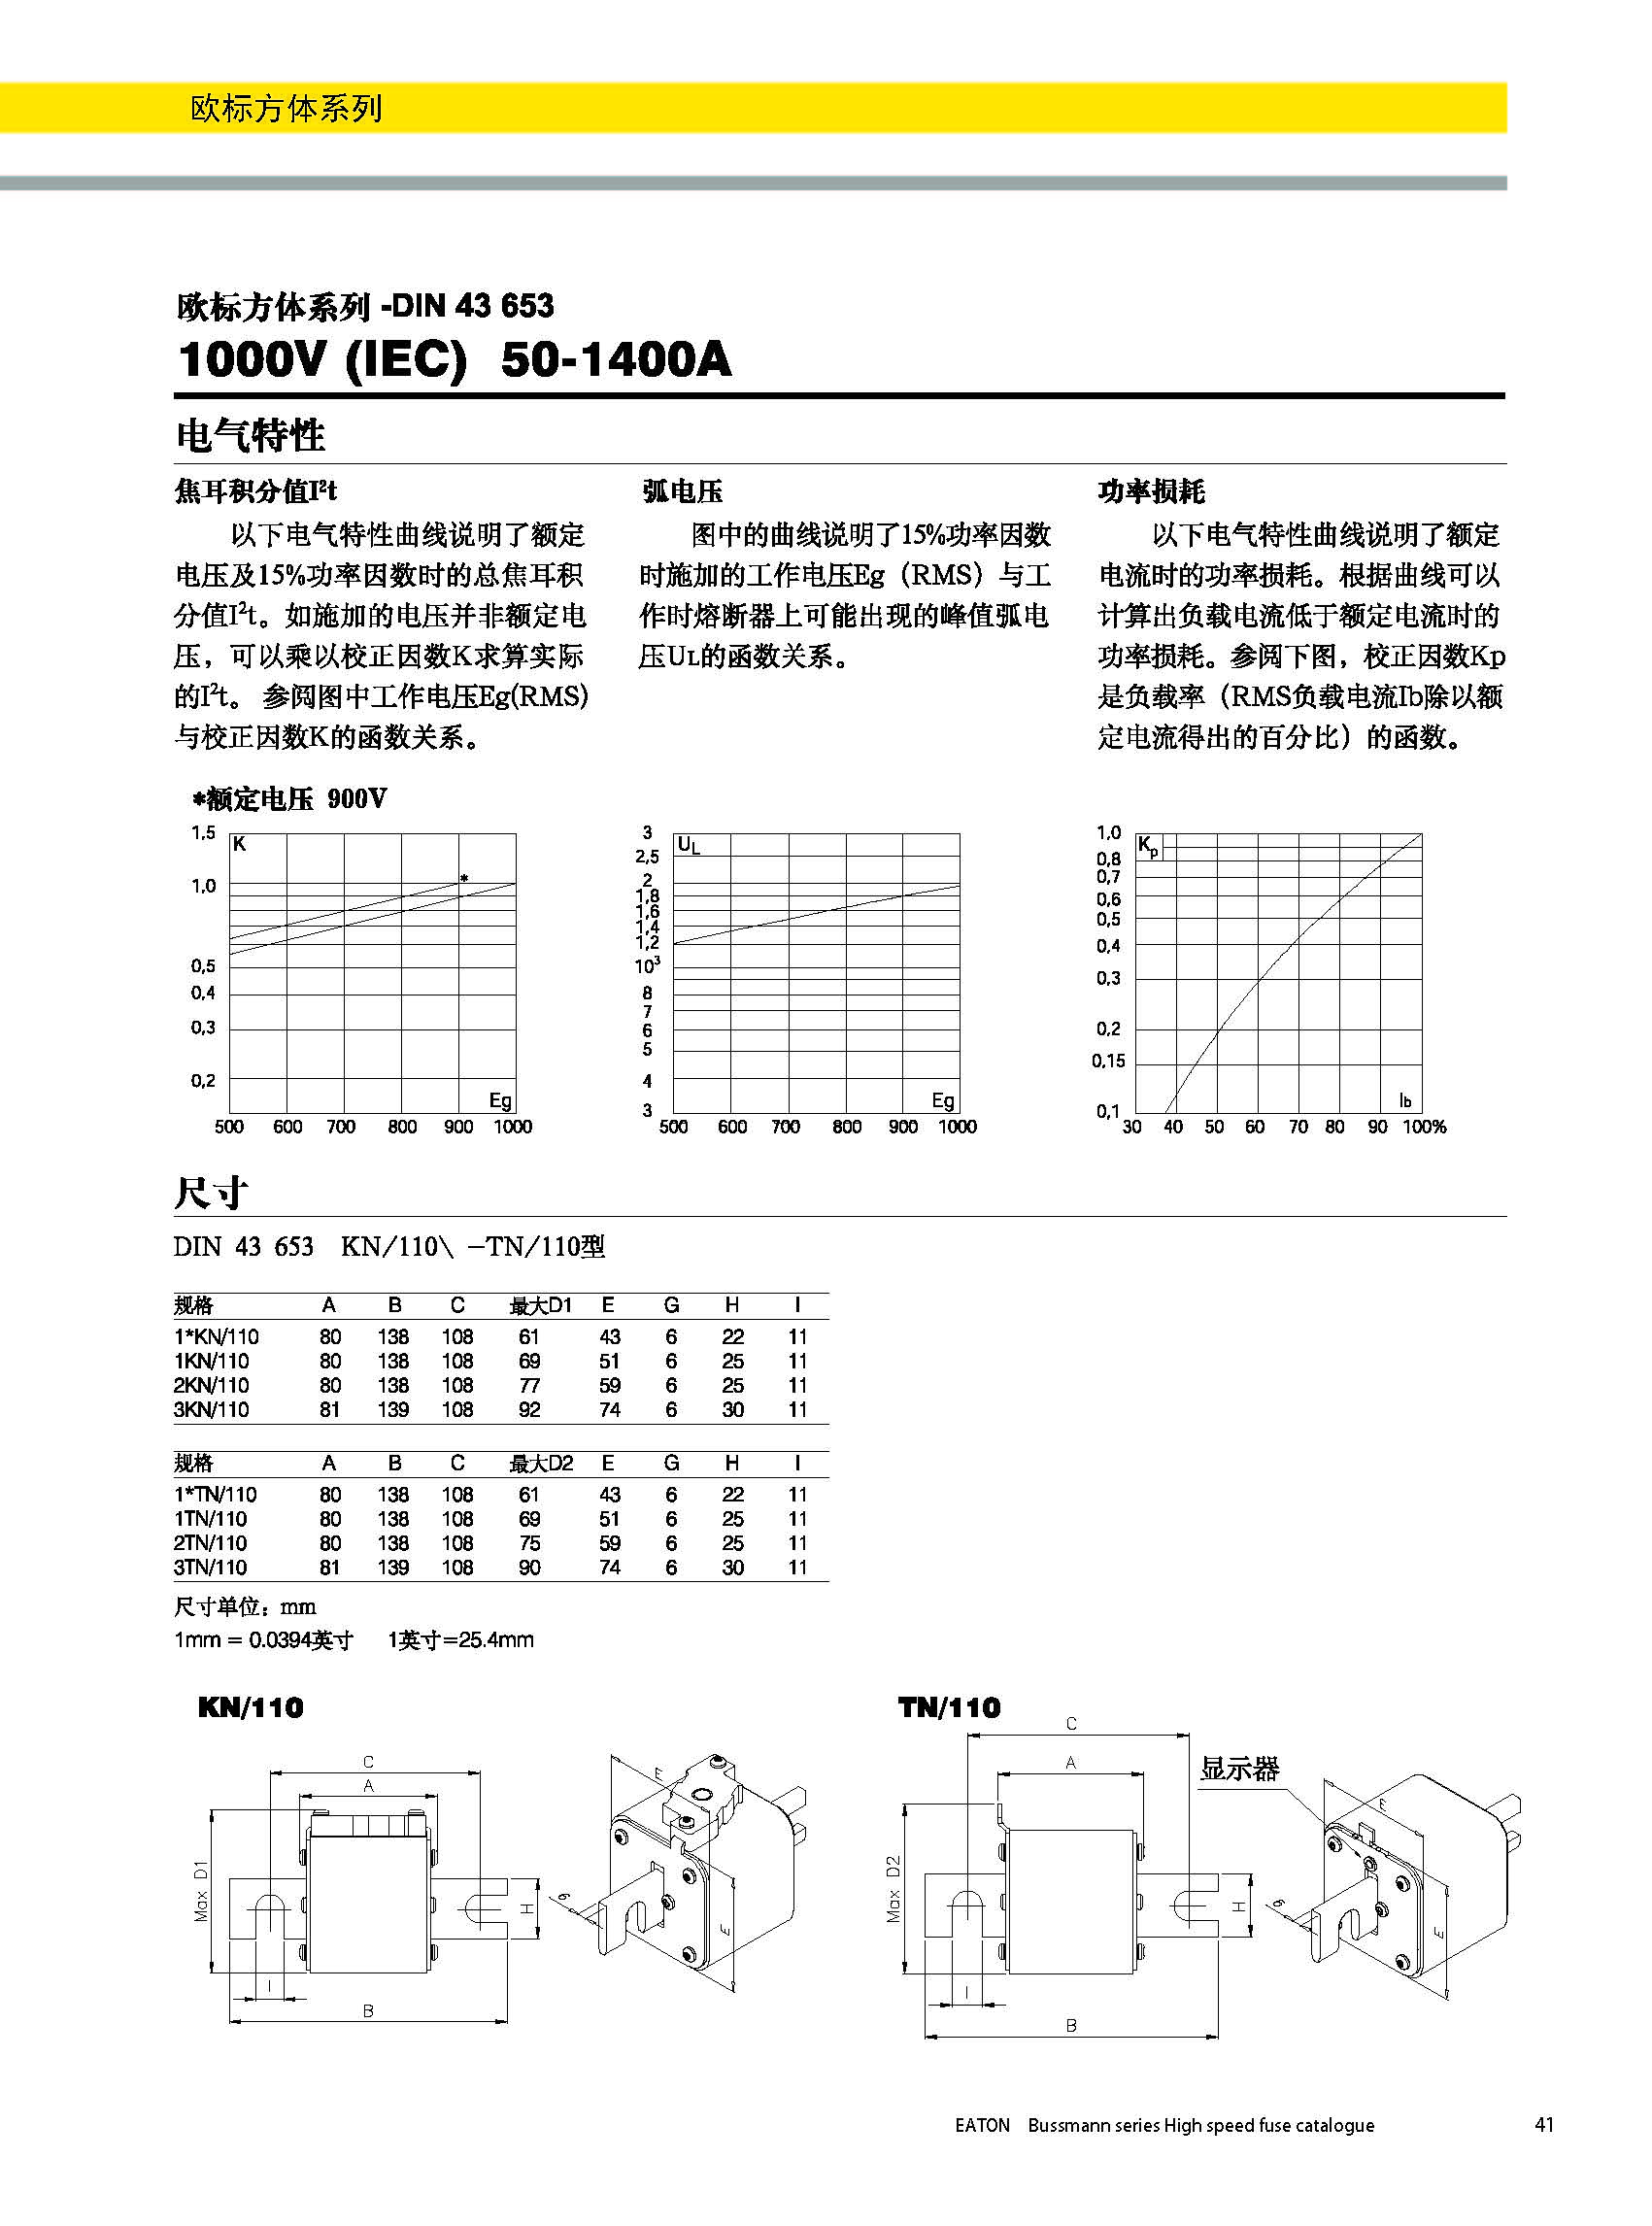 欧标方体DIN43653 1000V 50-1400A产品电气特性,尺寸图